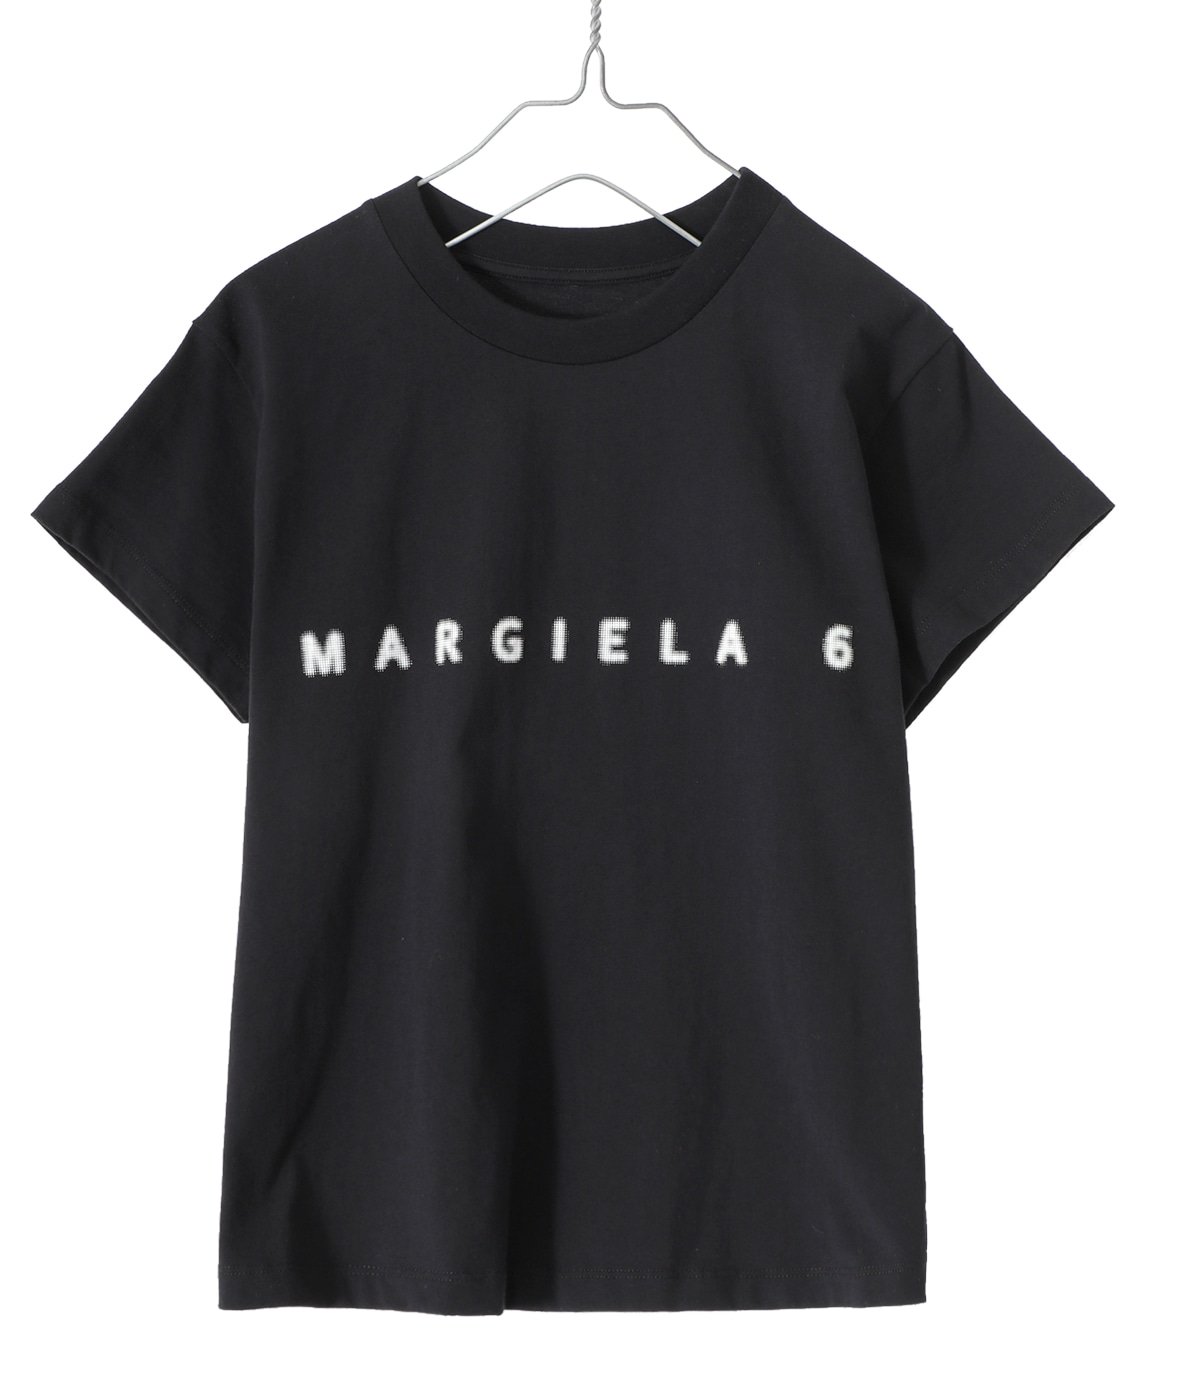 新品 タグ付 マルジェラ メンズ ロゴ Tシャツ表地綿100%